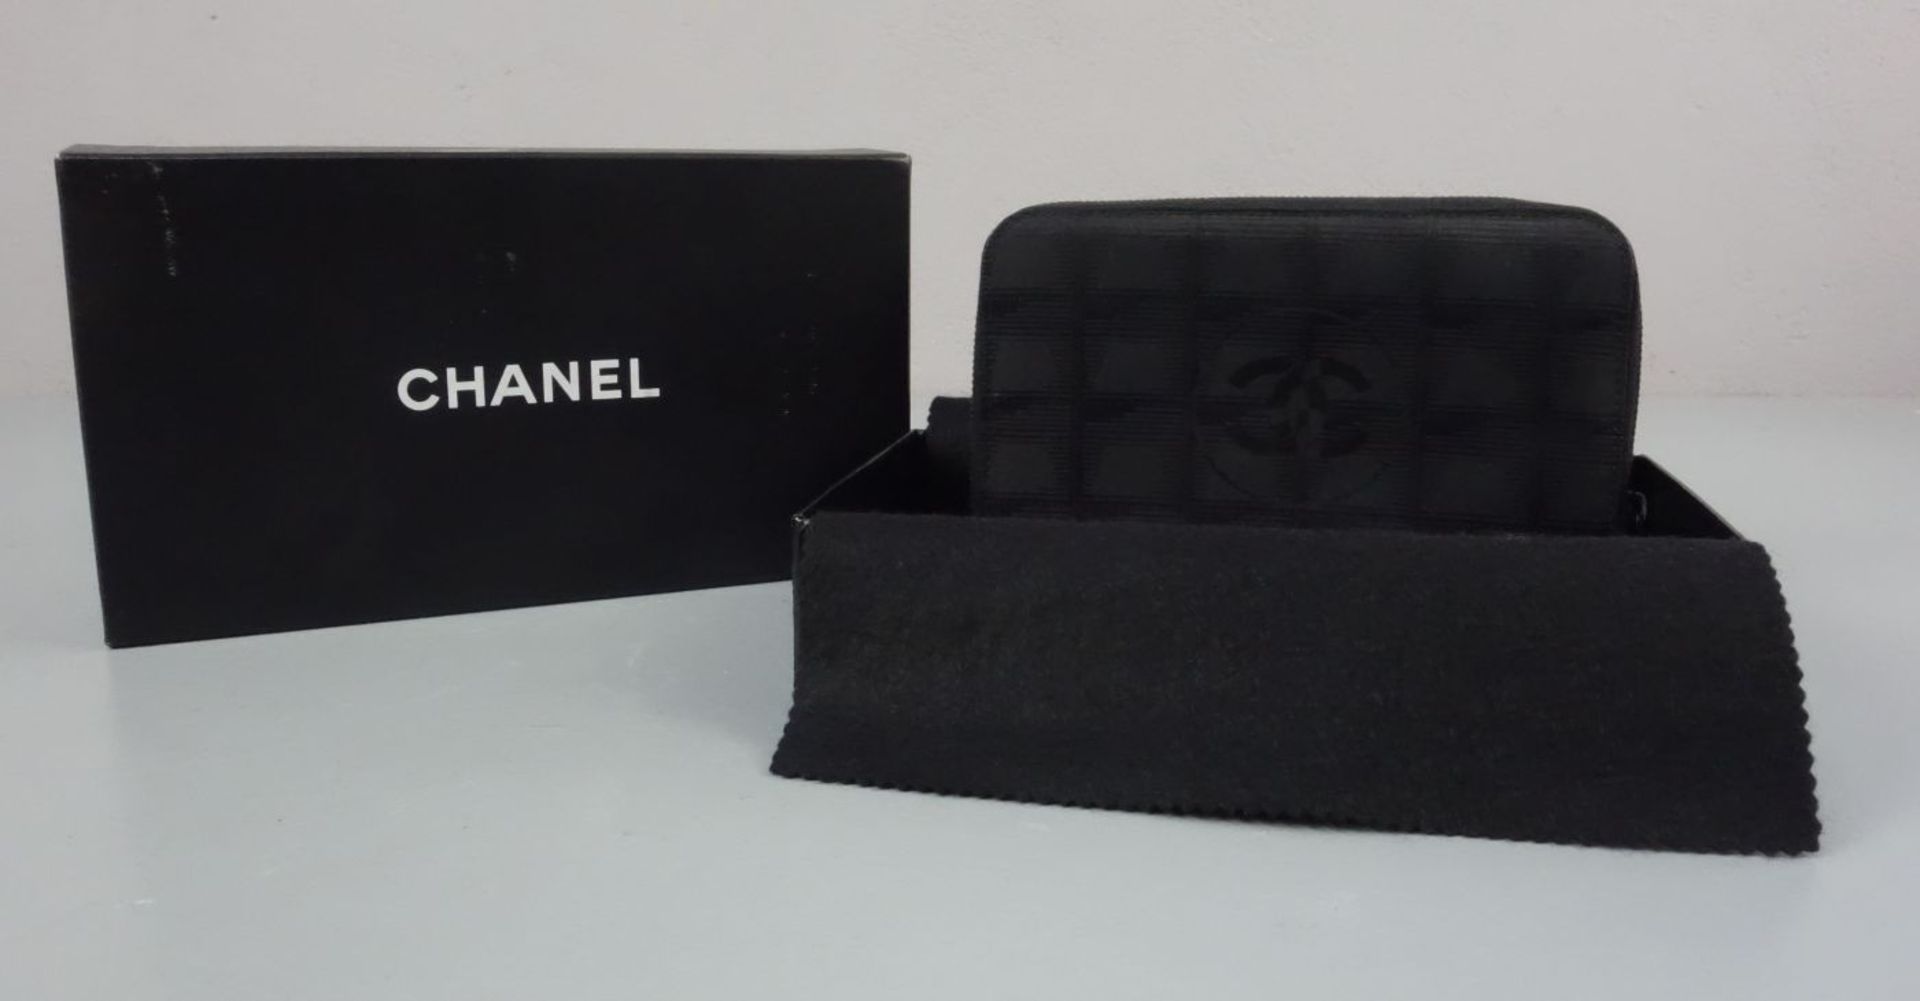 CHANEL PORTEMONNAIE / GELDBÖRSE / BRIEFTASCHE / zipper wallet, Chanel / Frankreich. Geldbörse aus